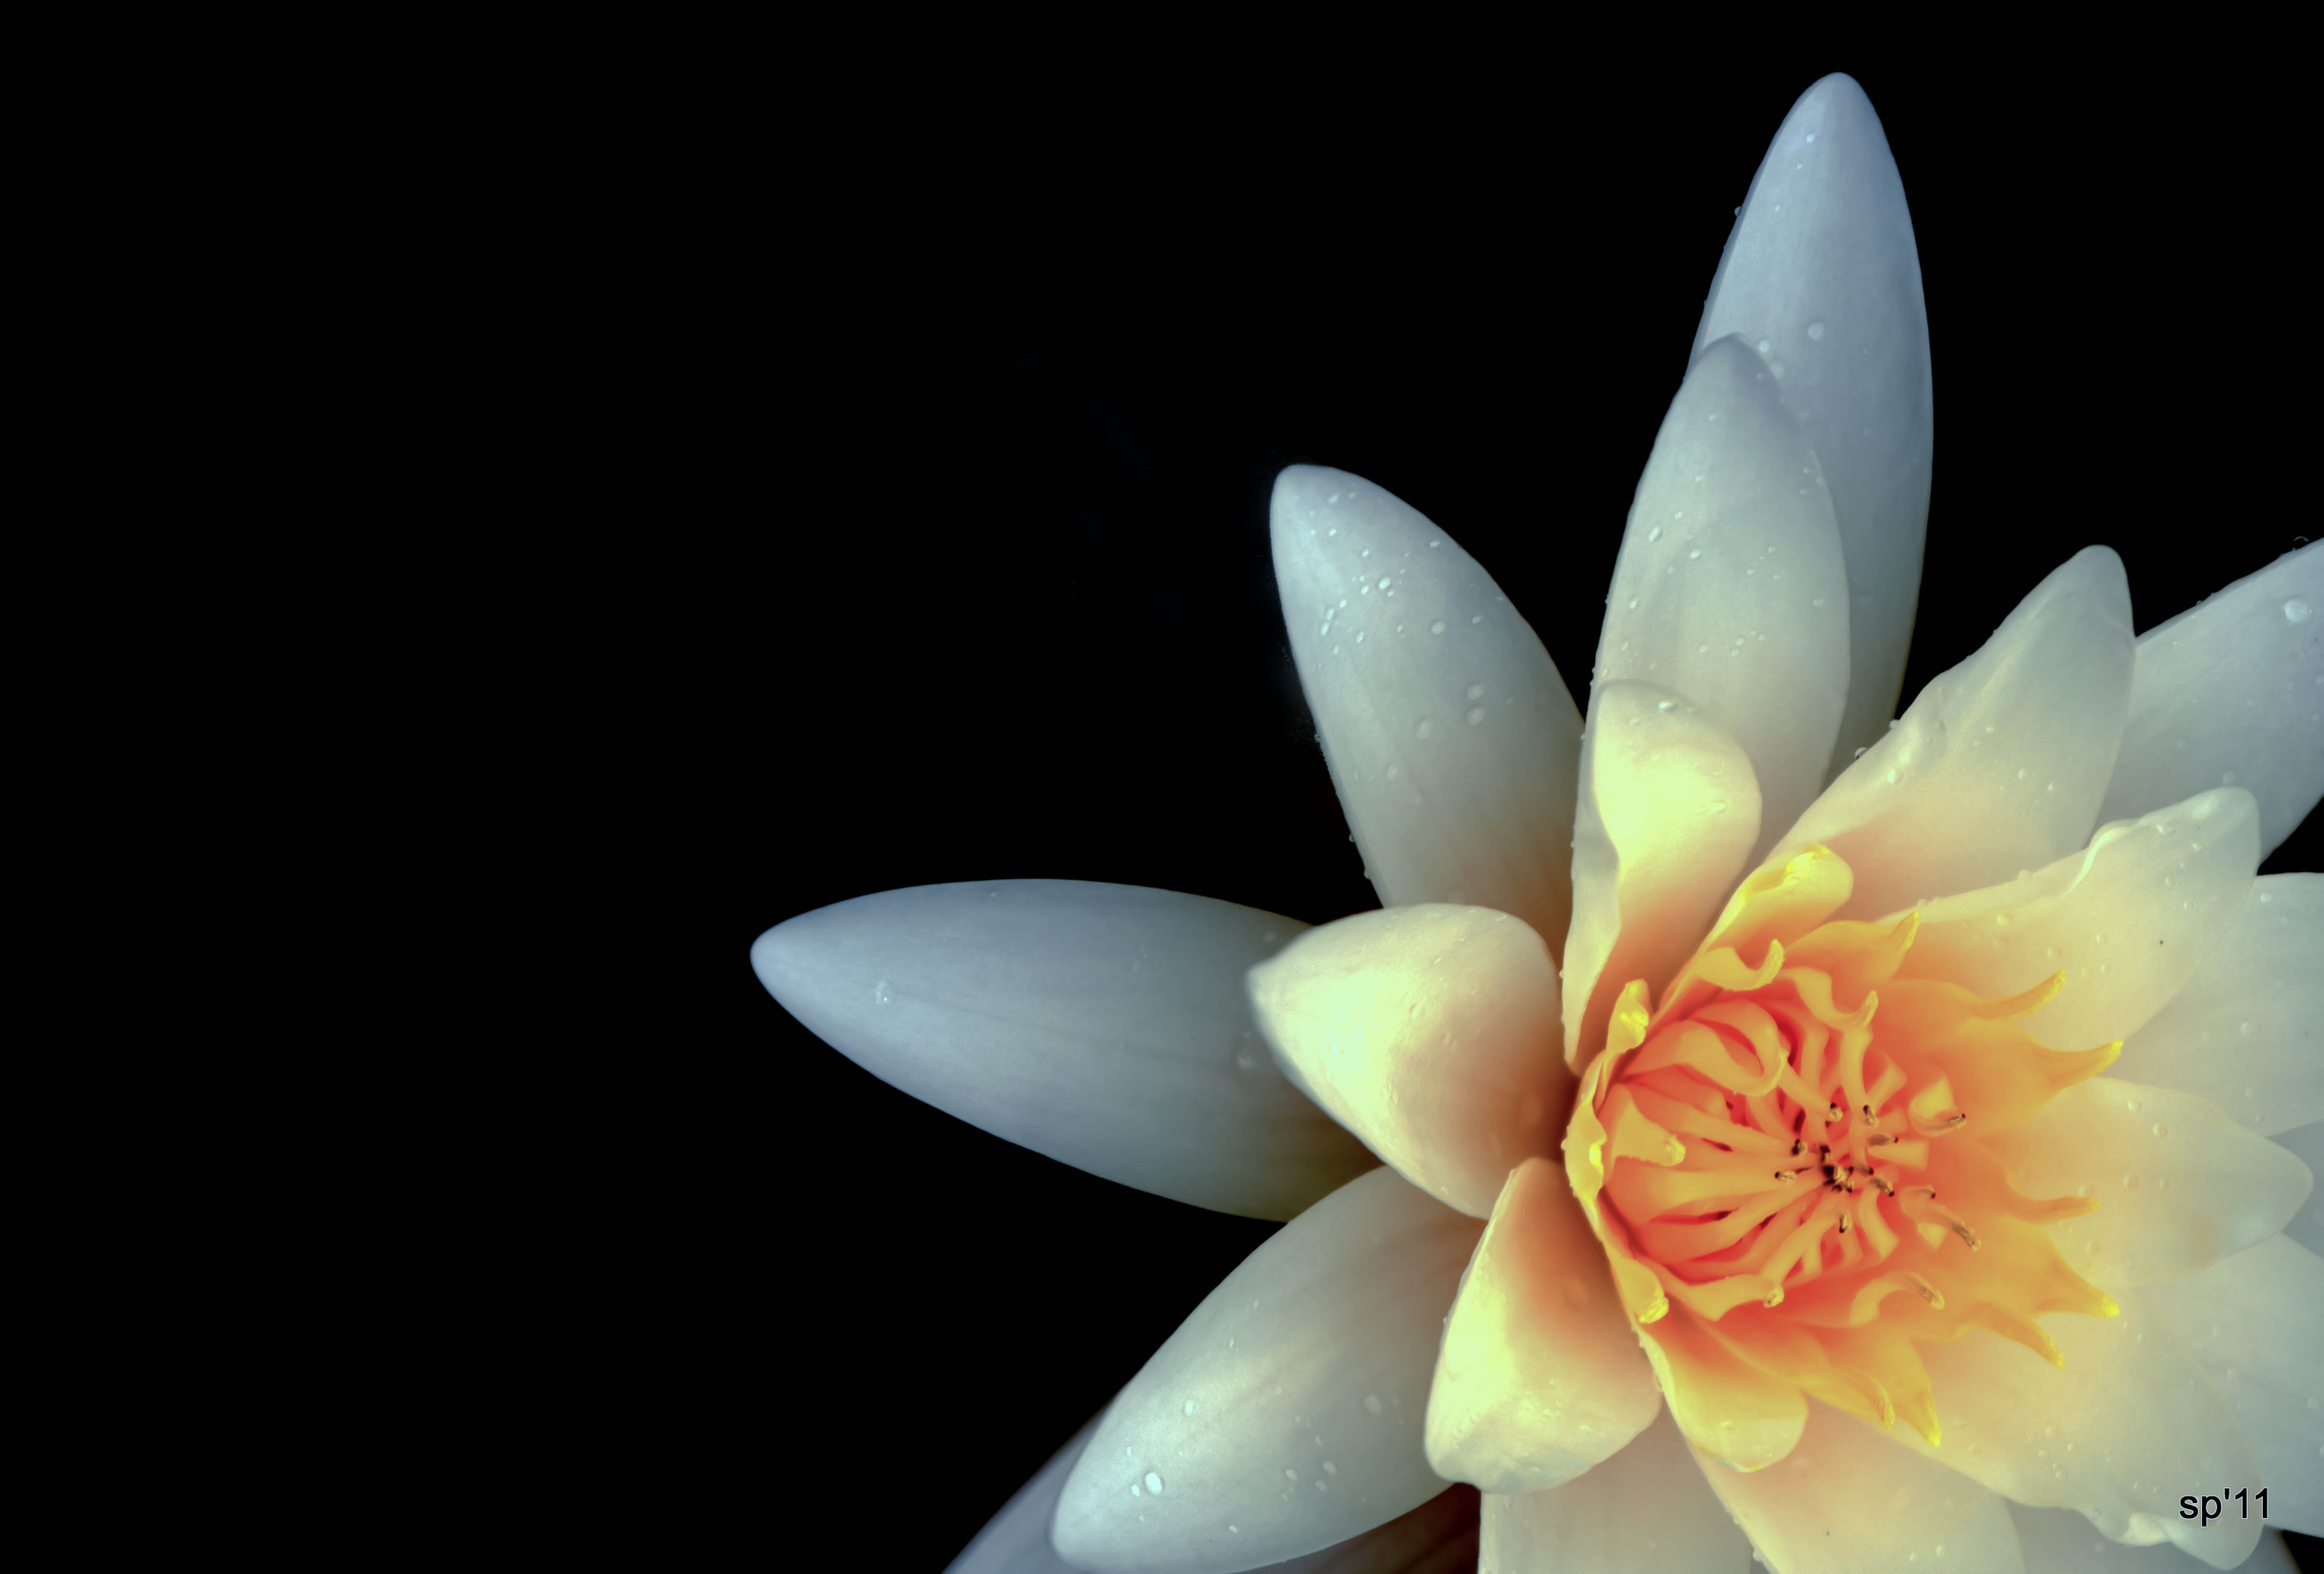 Le nombre de pétales composant une fleur est souvent utilisé comme critère de classification chez les végétaux. © annickashyam1, Flickr, CC by-nc-nd 2.0